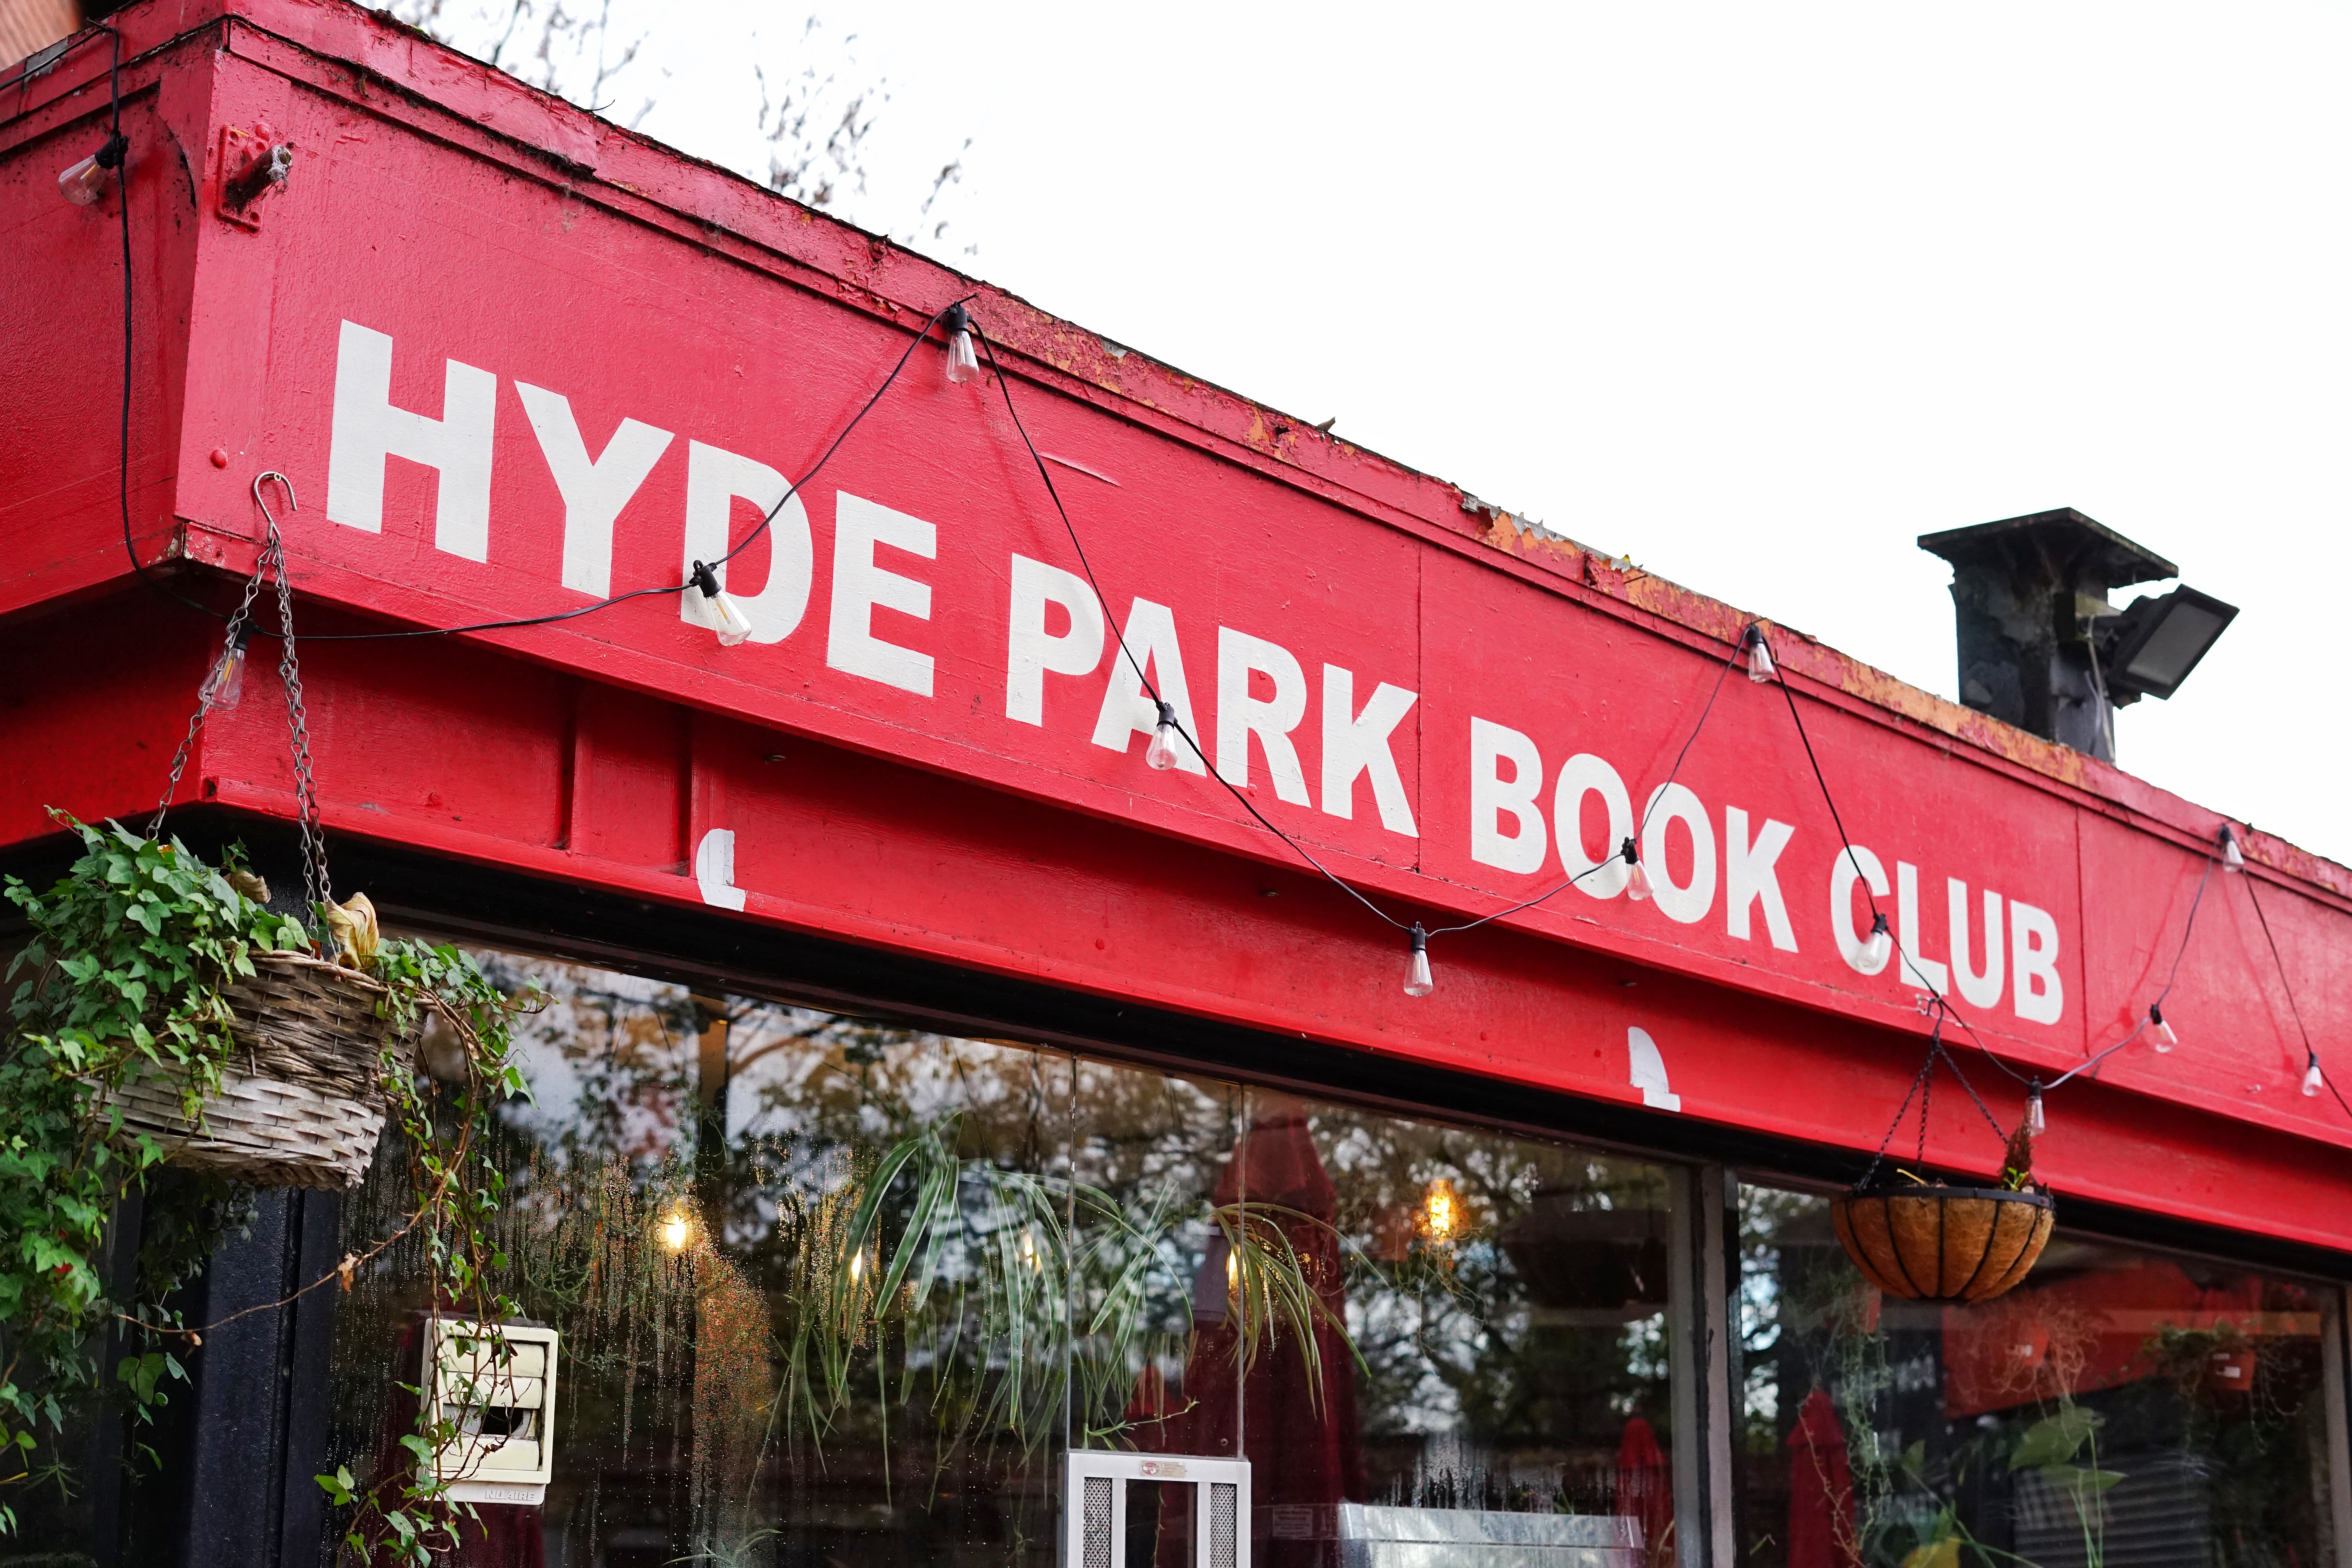 HYDE PARK BOOK CLUB